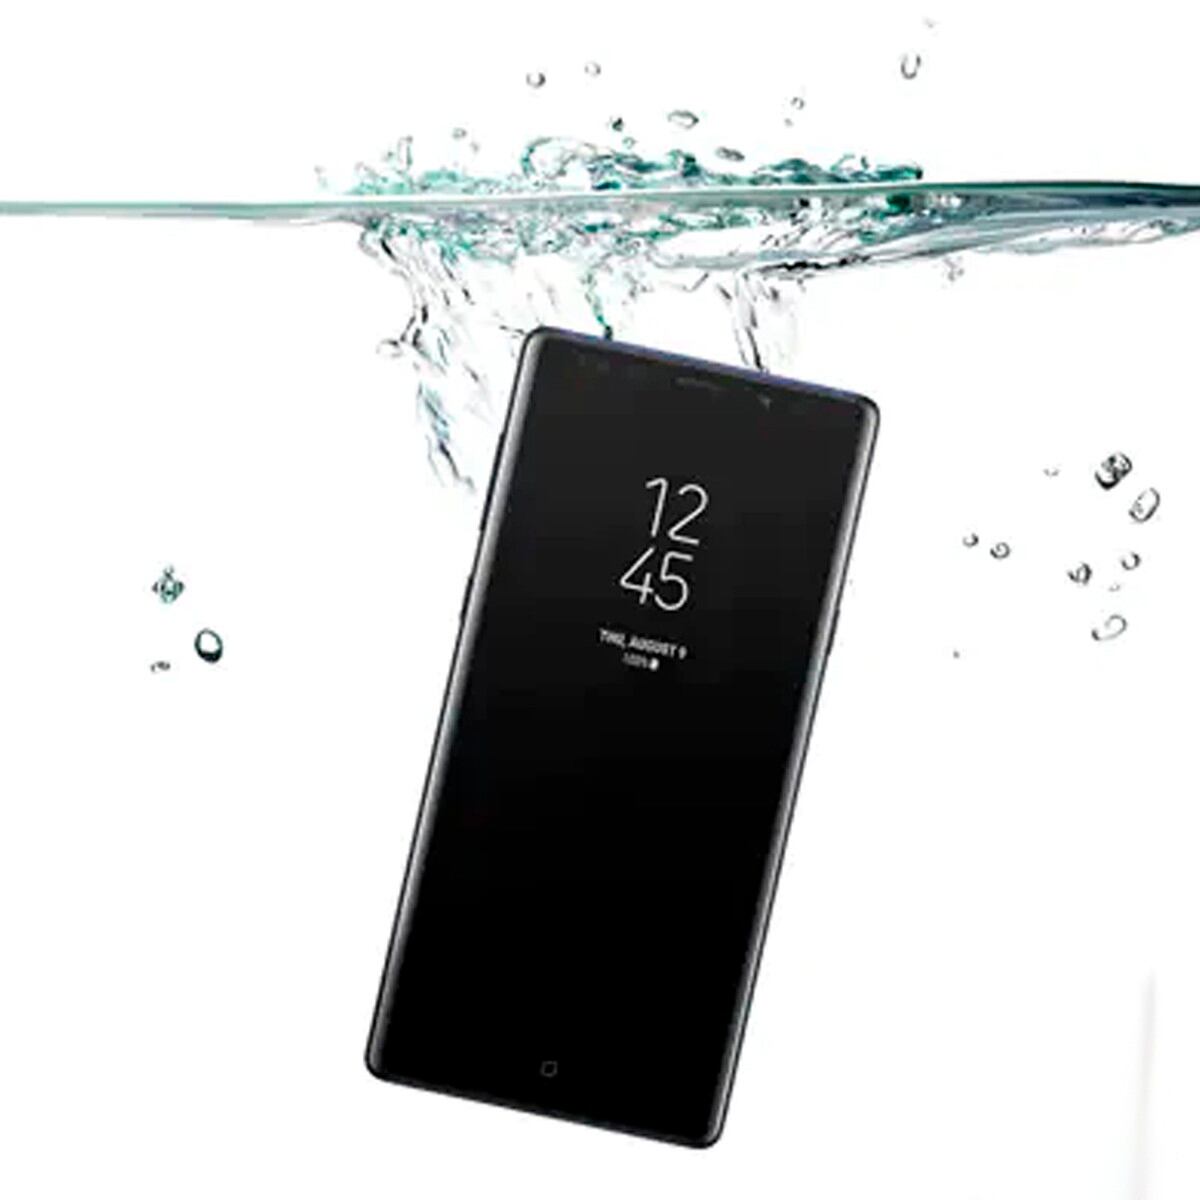 Cuáles son los mejores móviles de Samsung resistentes al agua?